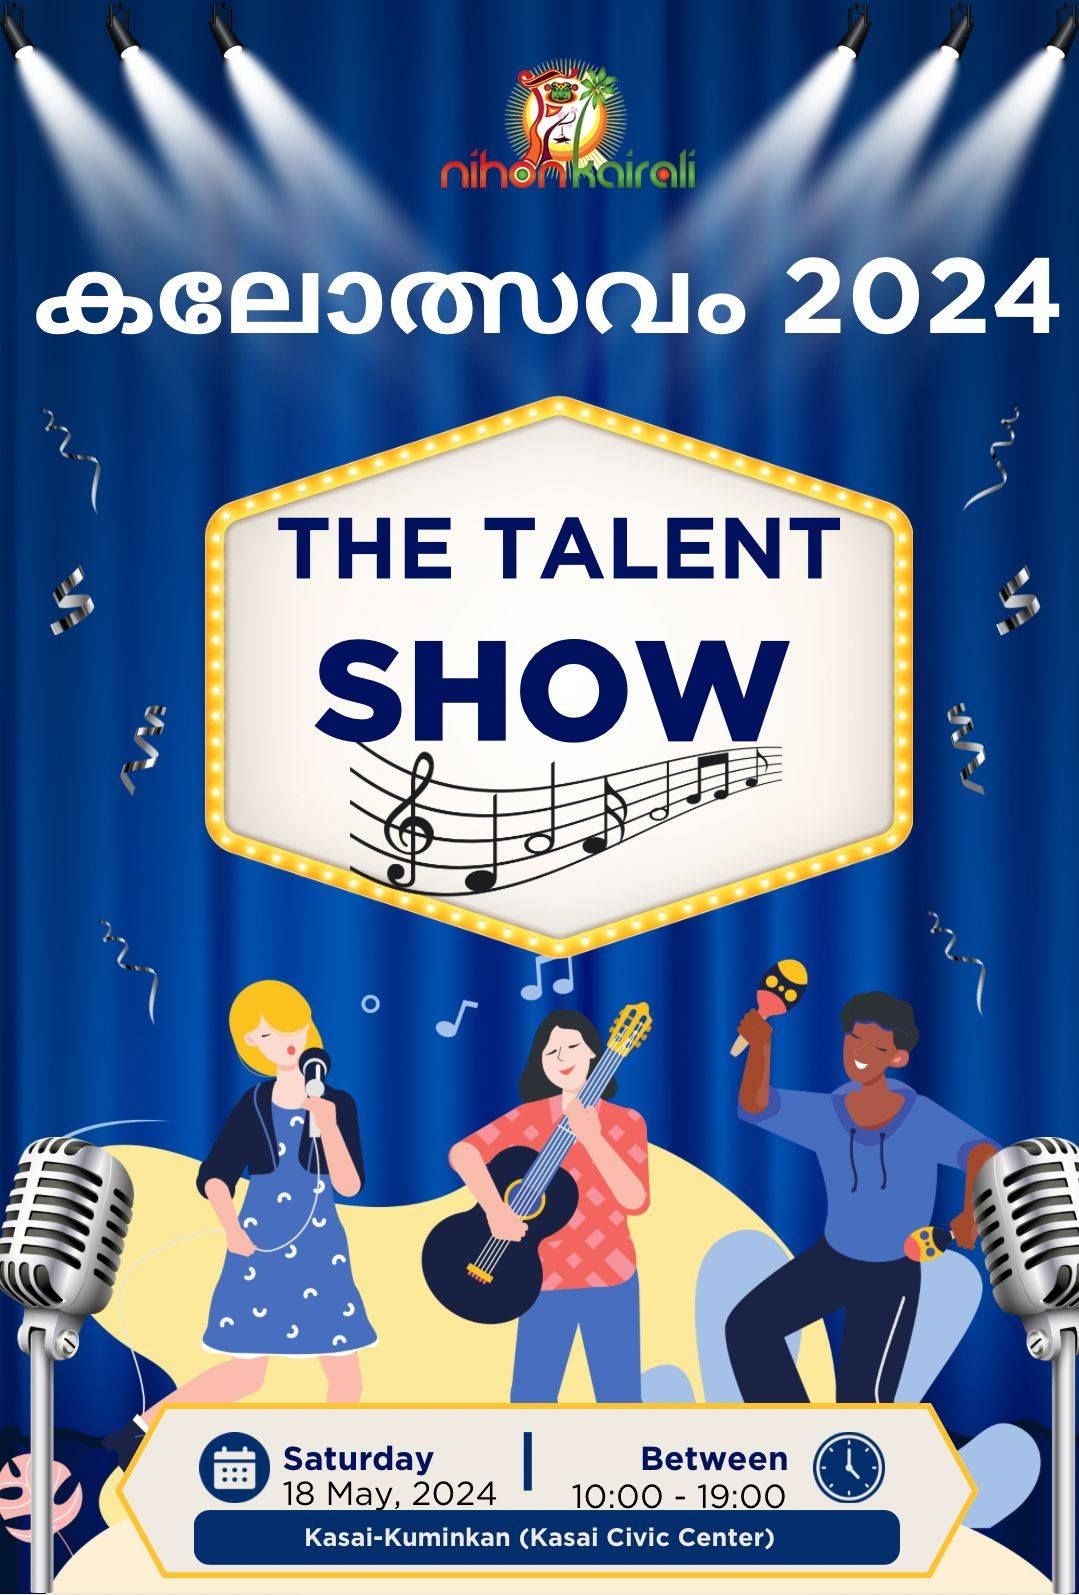 Kalotsavam 2024 - Nihon Kairali Talent show